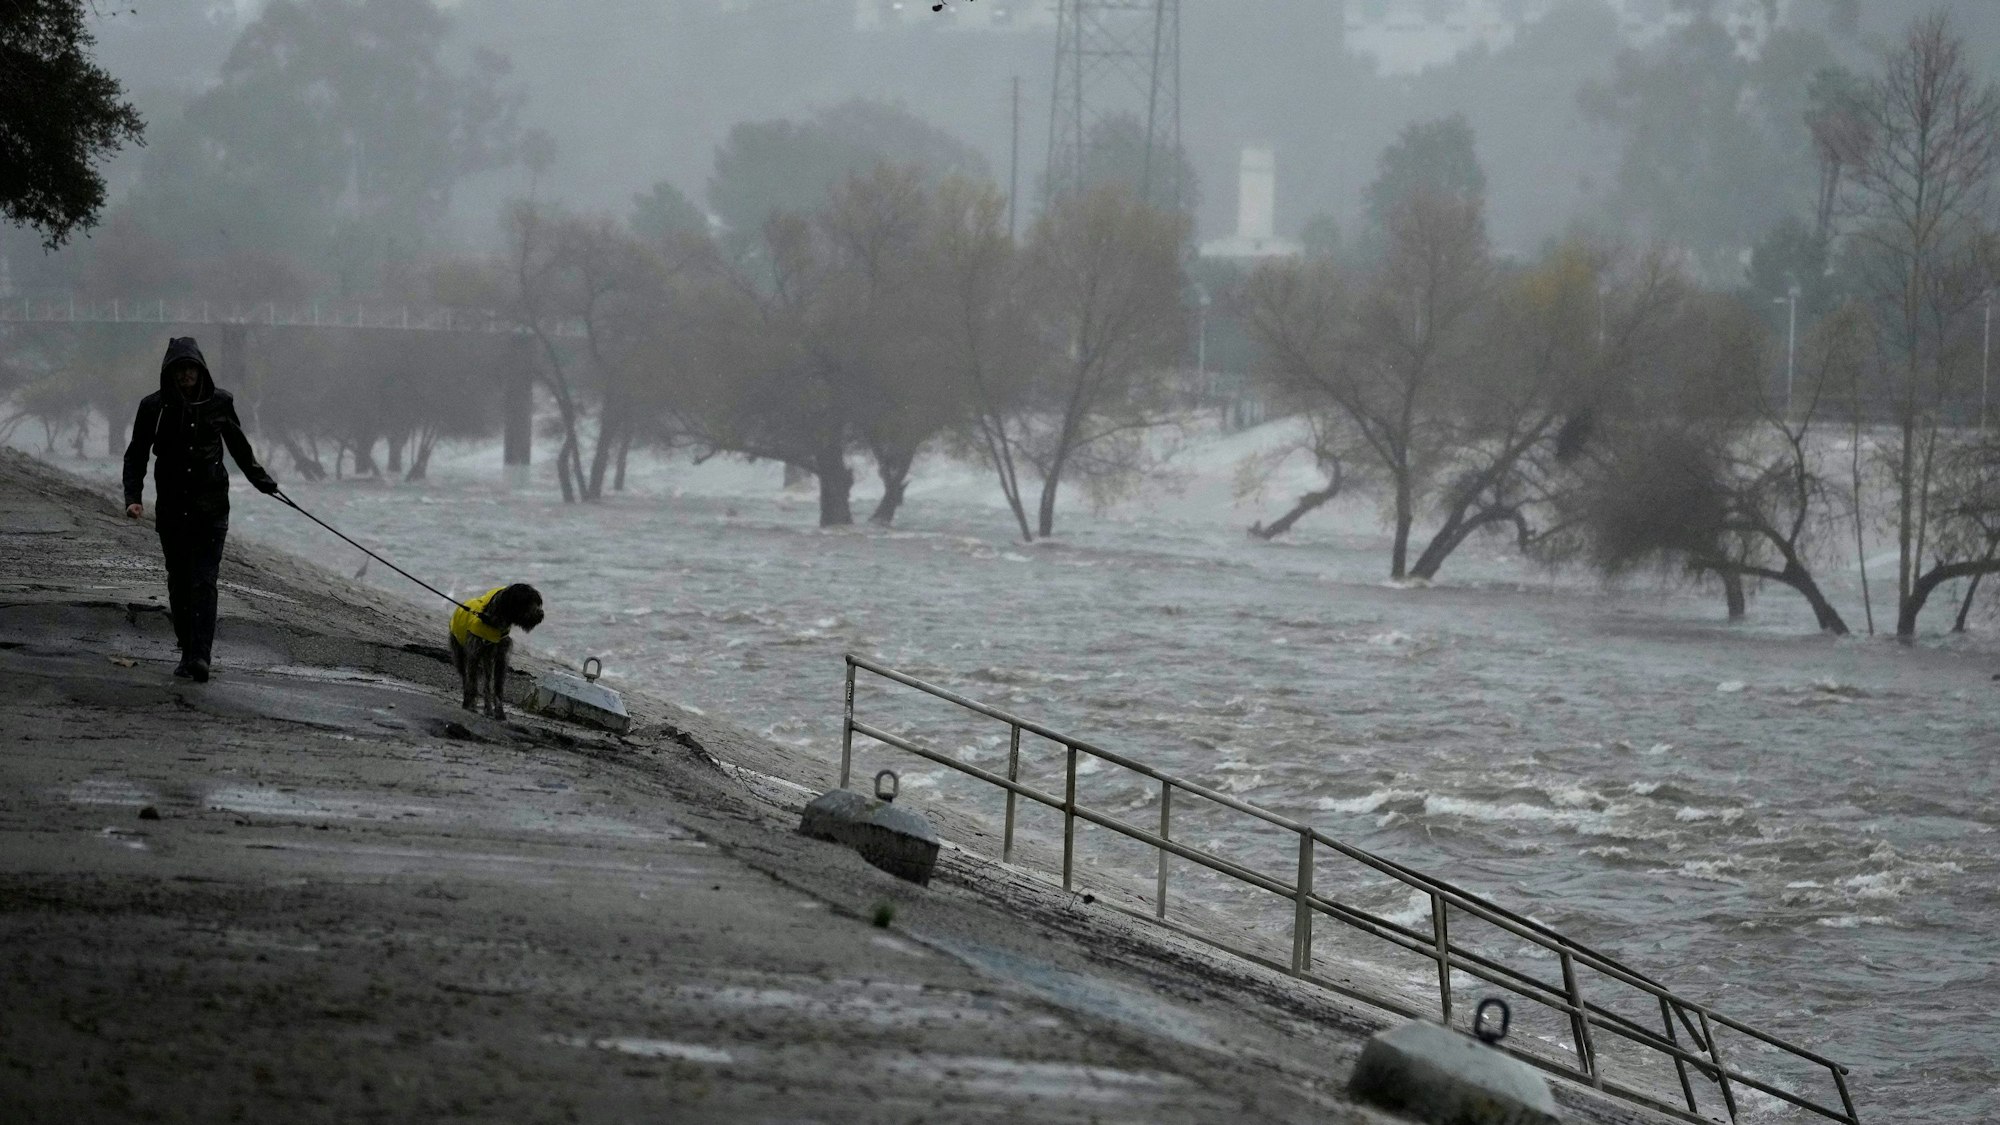 Ein Mann geht mit einem Hund entlang eines überfluteten Kanals in Los Angeles. Durch schwere Unwetter sind in der Stadt in wenigen Tagen mehr als 300 Liter Regen pro Quadratmeter gefallen.